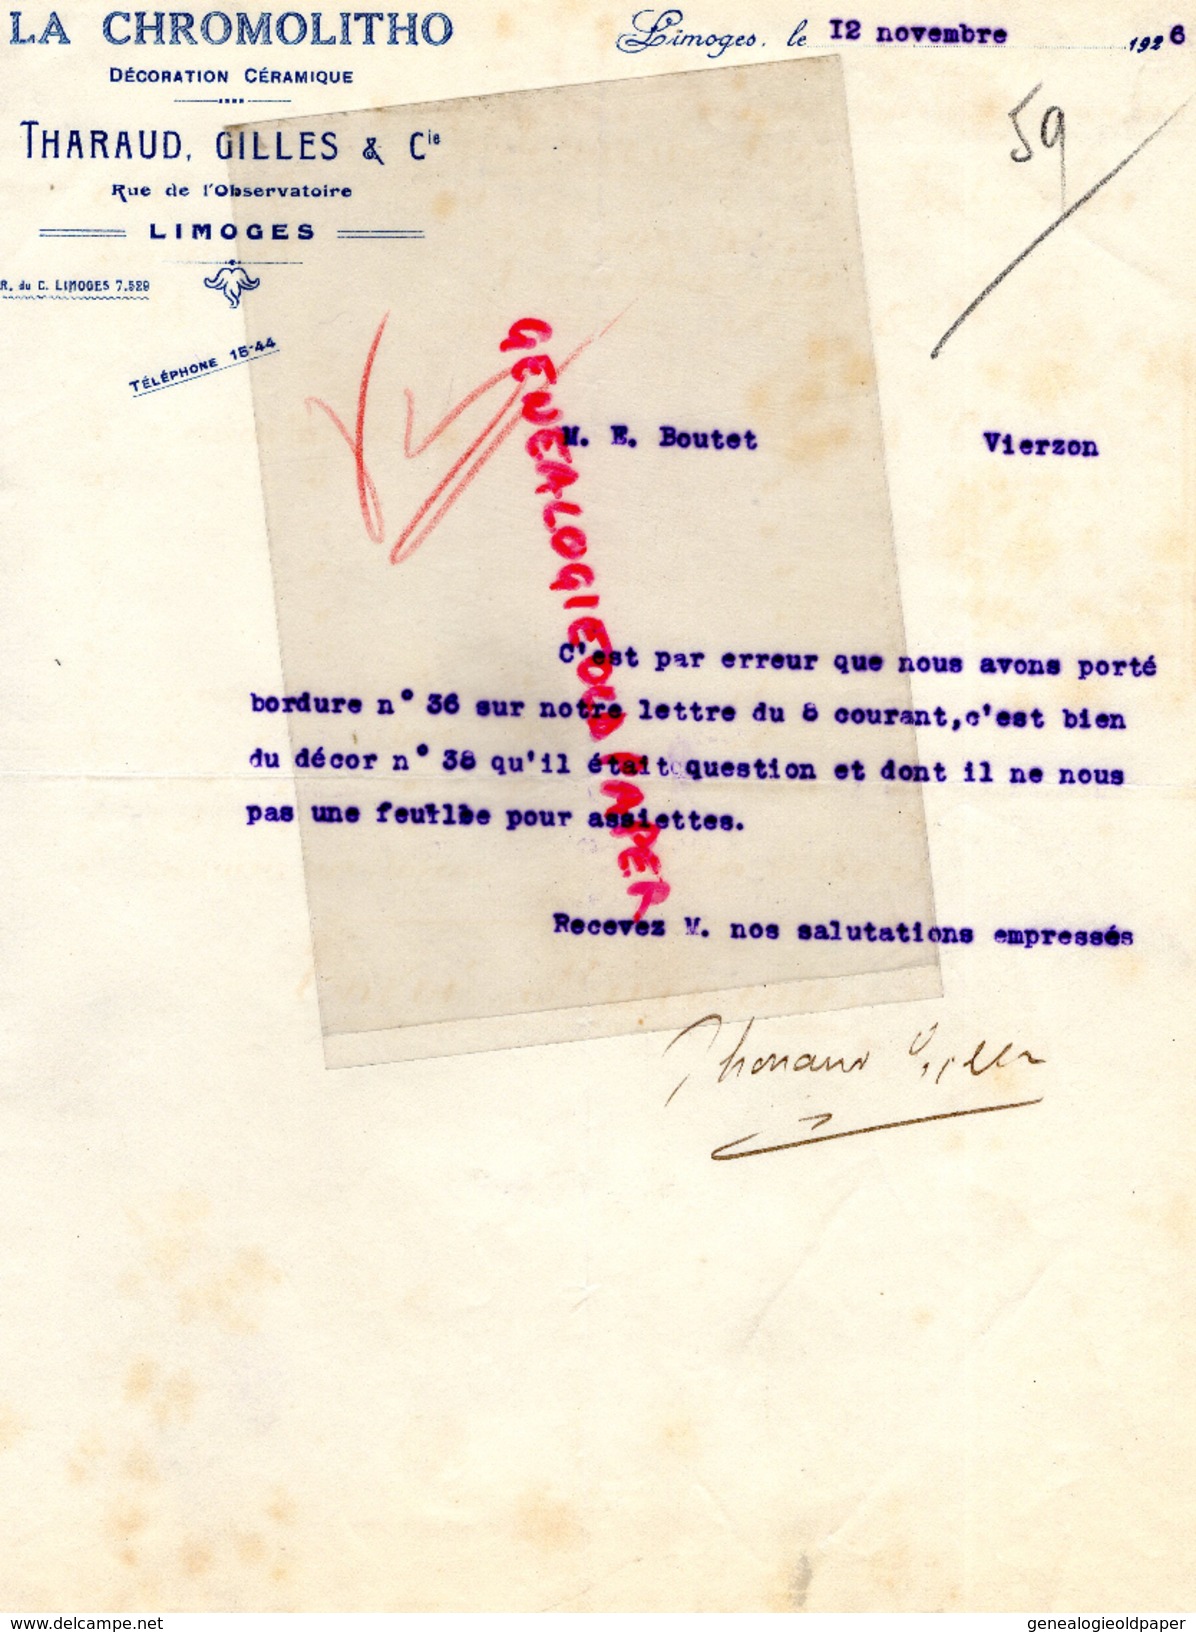 87 - LIMOGES - FACTURE LA CHROMOLITHO-DECORATION CERAMIQUE- THARAUD GILLES & CIE-RUE OBSERVATOIRE-1926 - 1900 – 1949